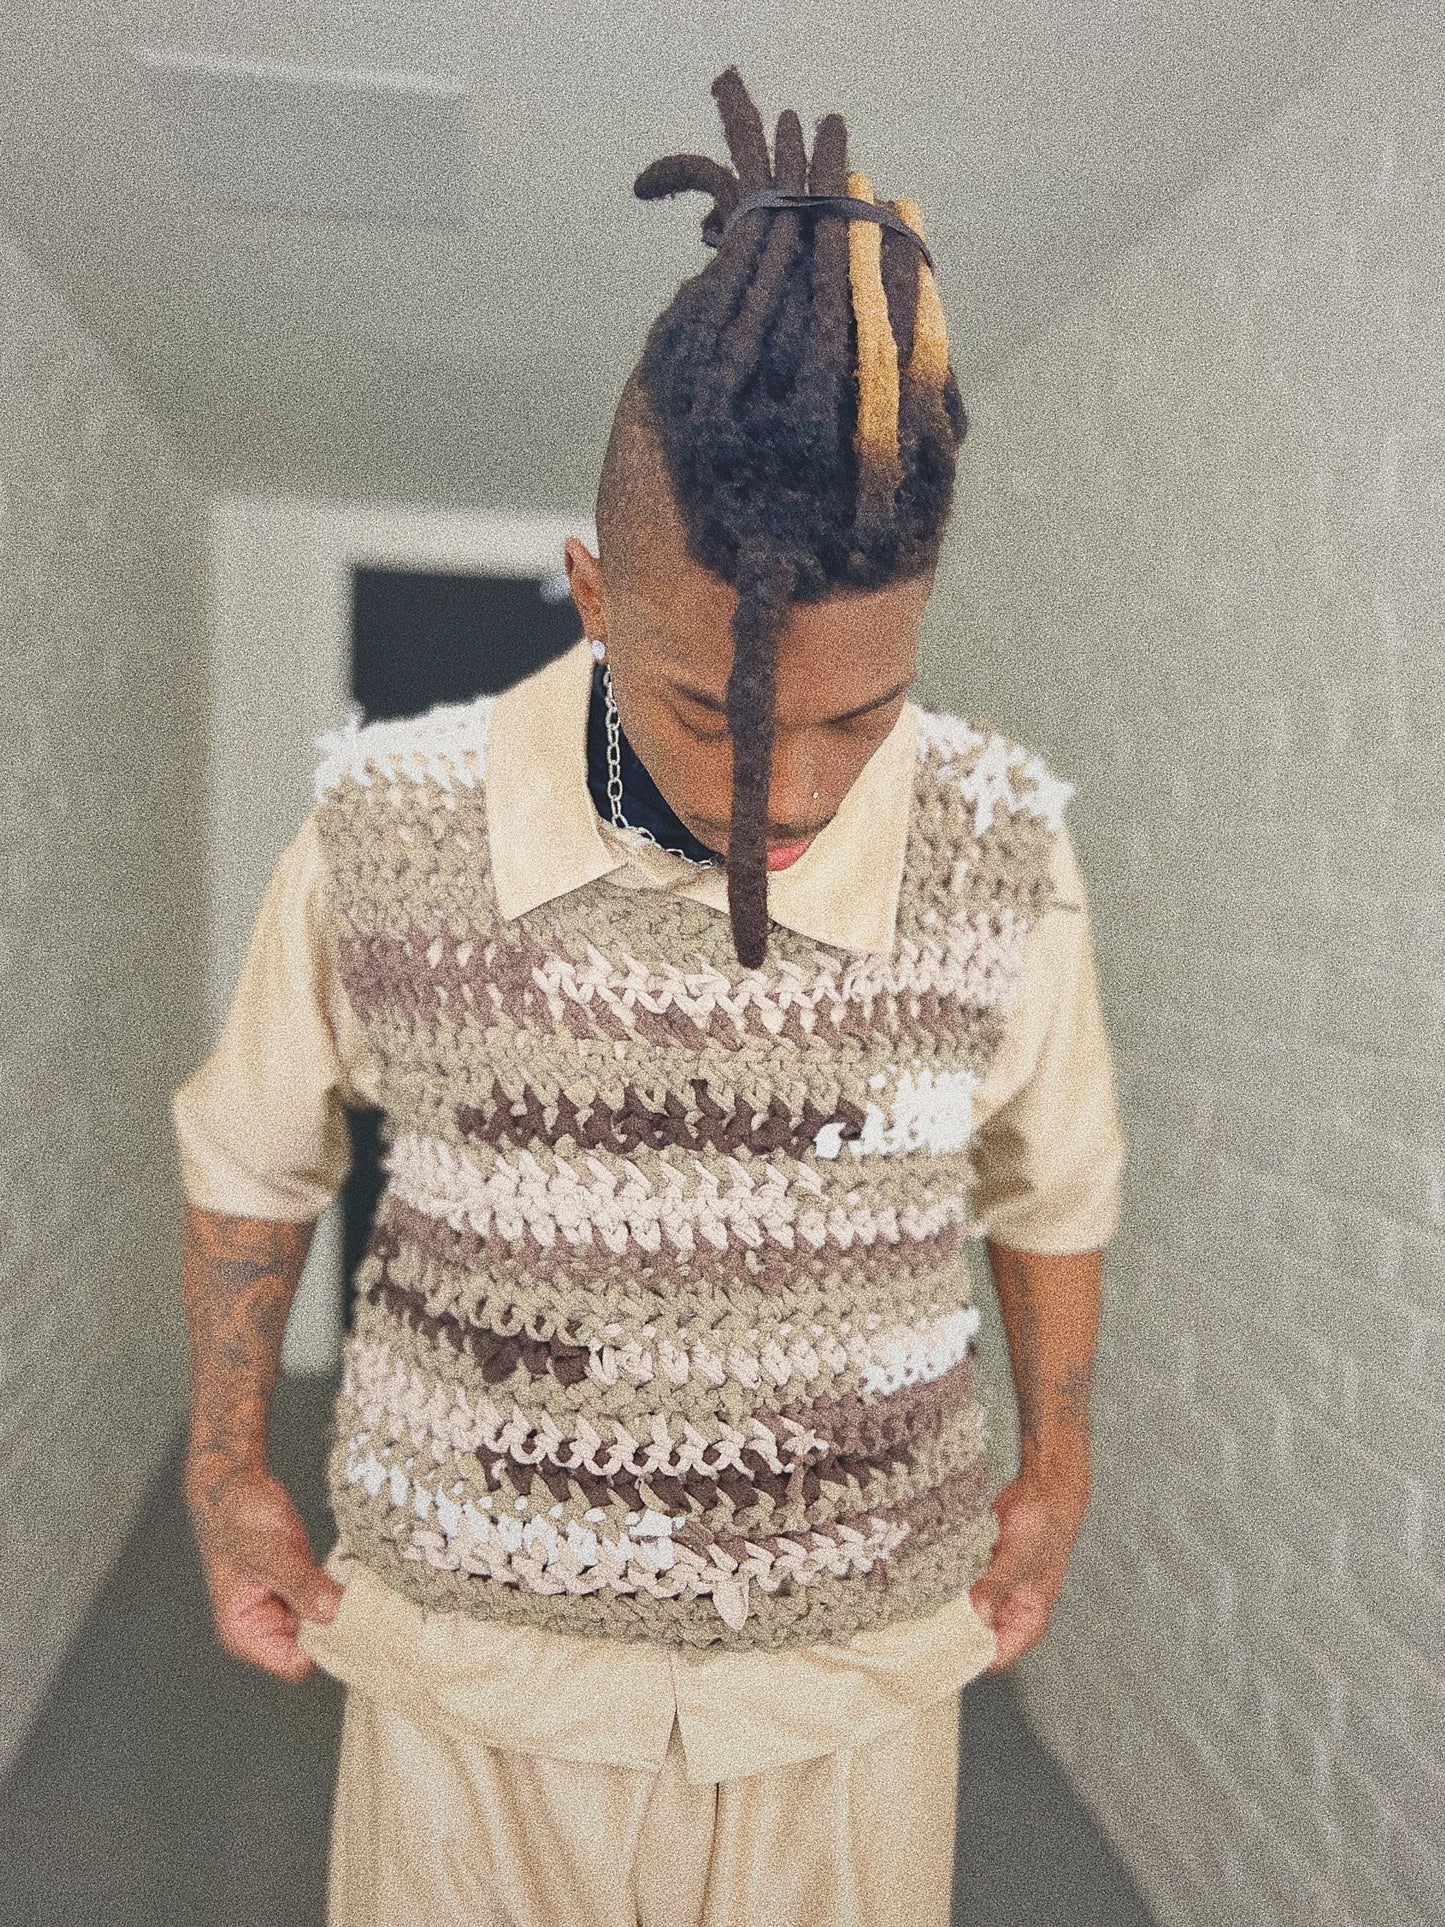 Tan T-shirt Yarn Crochet Sweater Vest